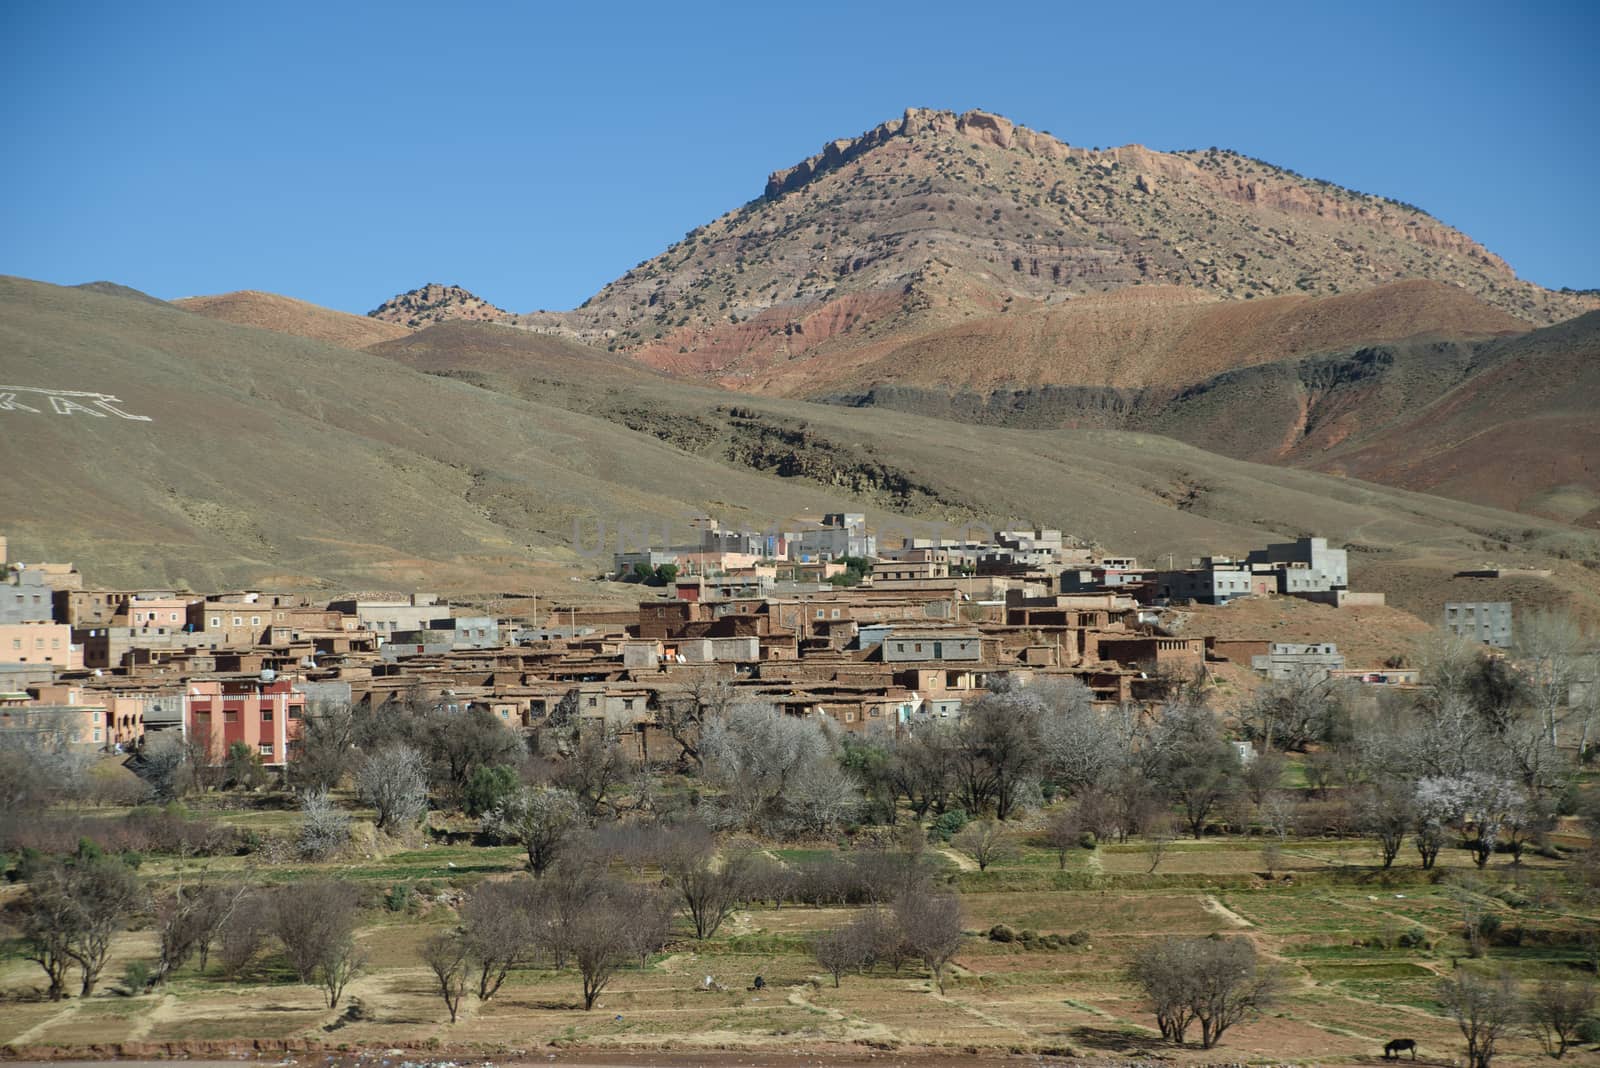 Travel destination and moroccan landmark - Atlas Mountains, Morocco